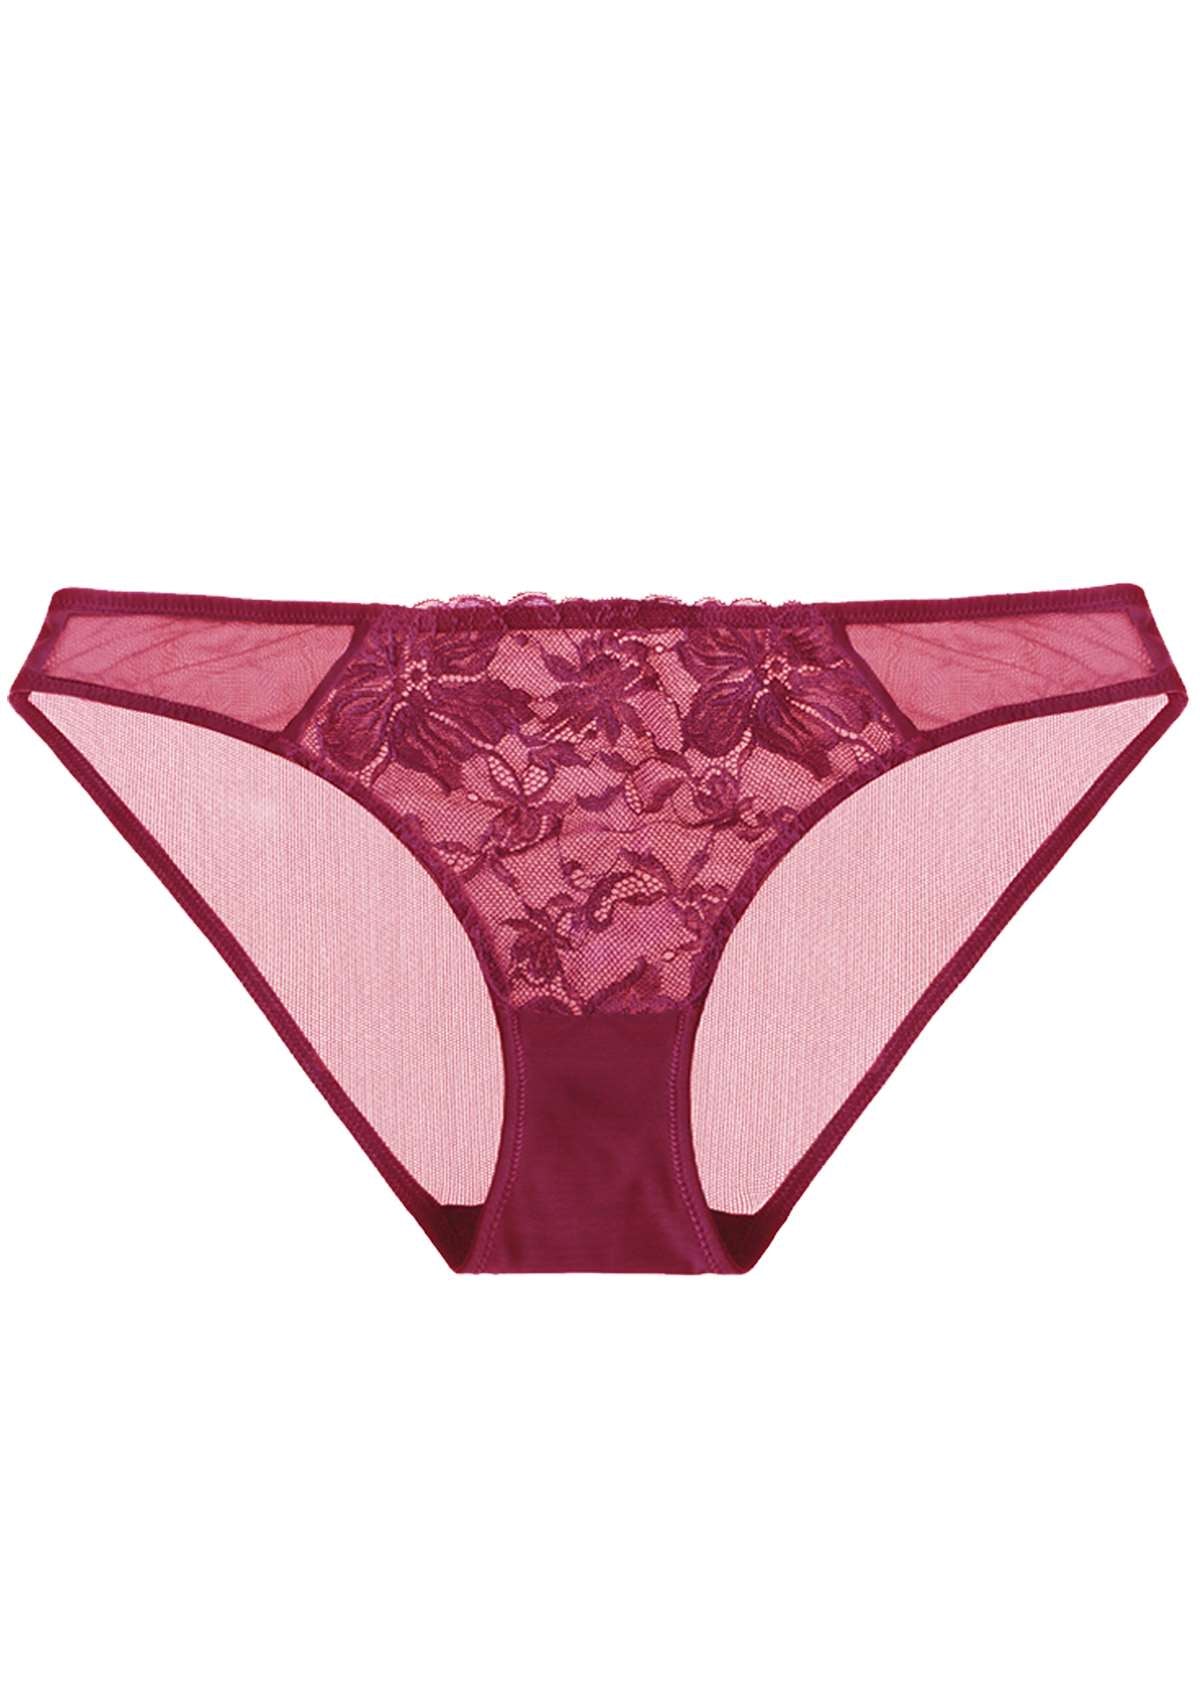 HSIA Pretty In Petals Mid-Rise Sexy Lace Everyday Underwear  - XXL / Bikini / Red